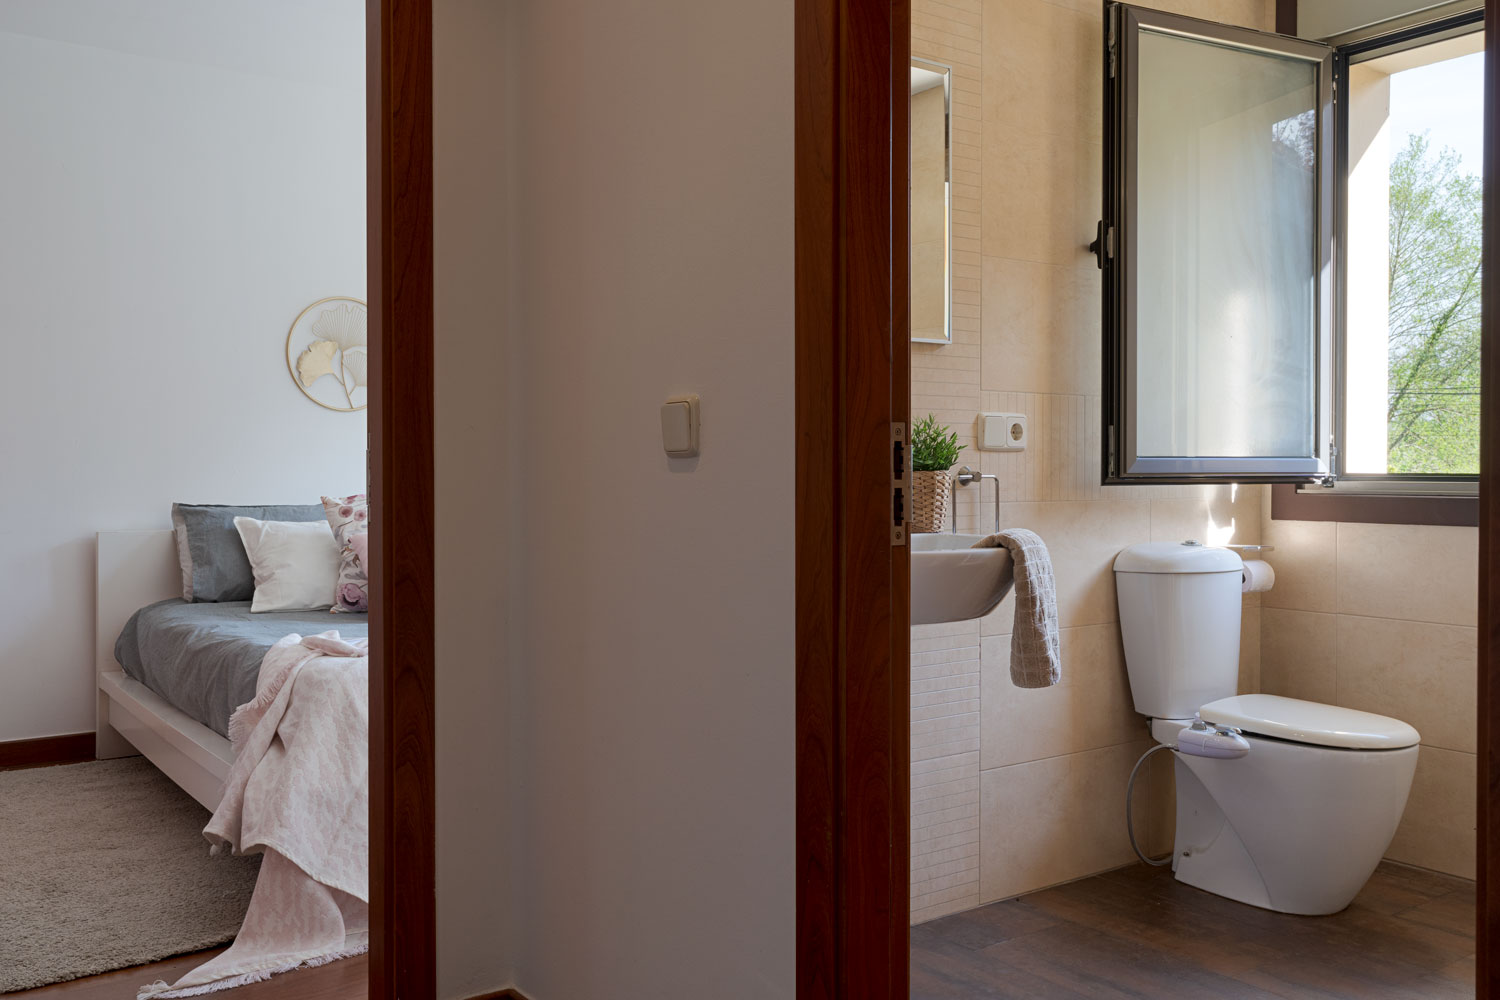 Vista desde el umbral de una puerta que muestra un baño con inodoro y lavamanos y una habitación contigua con cama y decoración suave